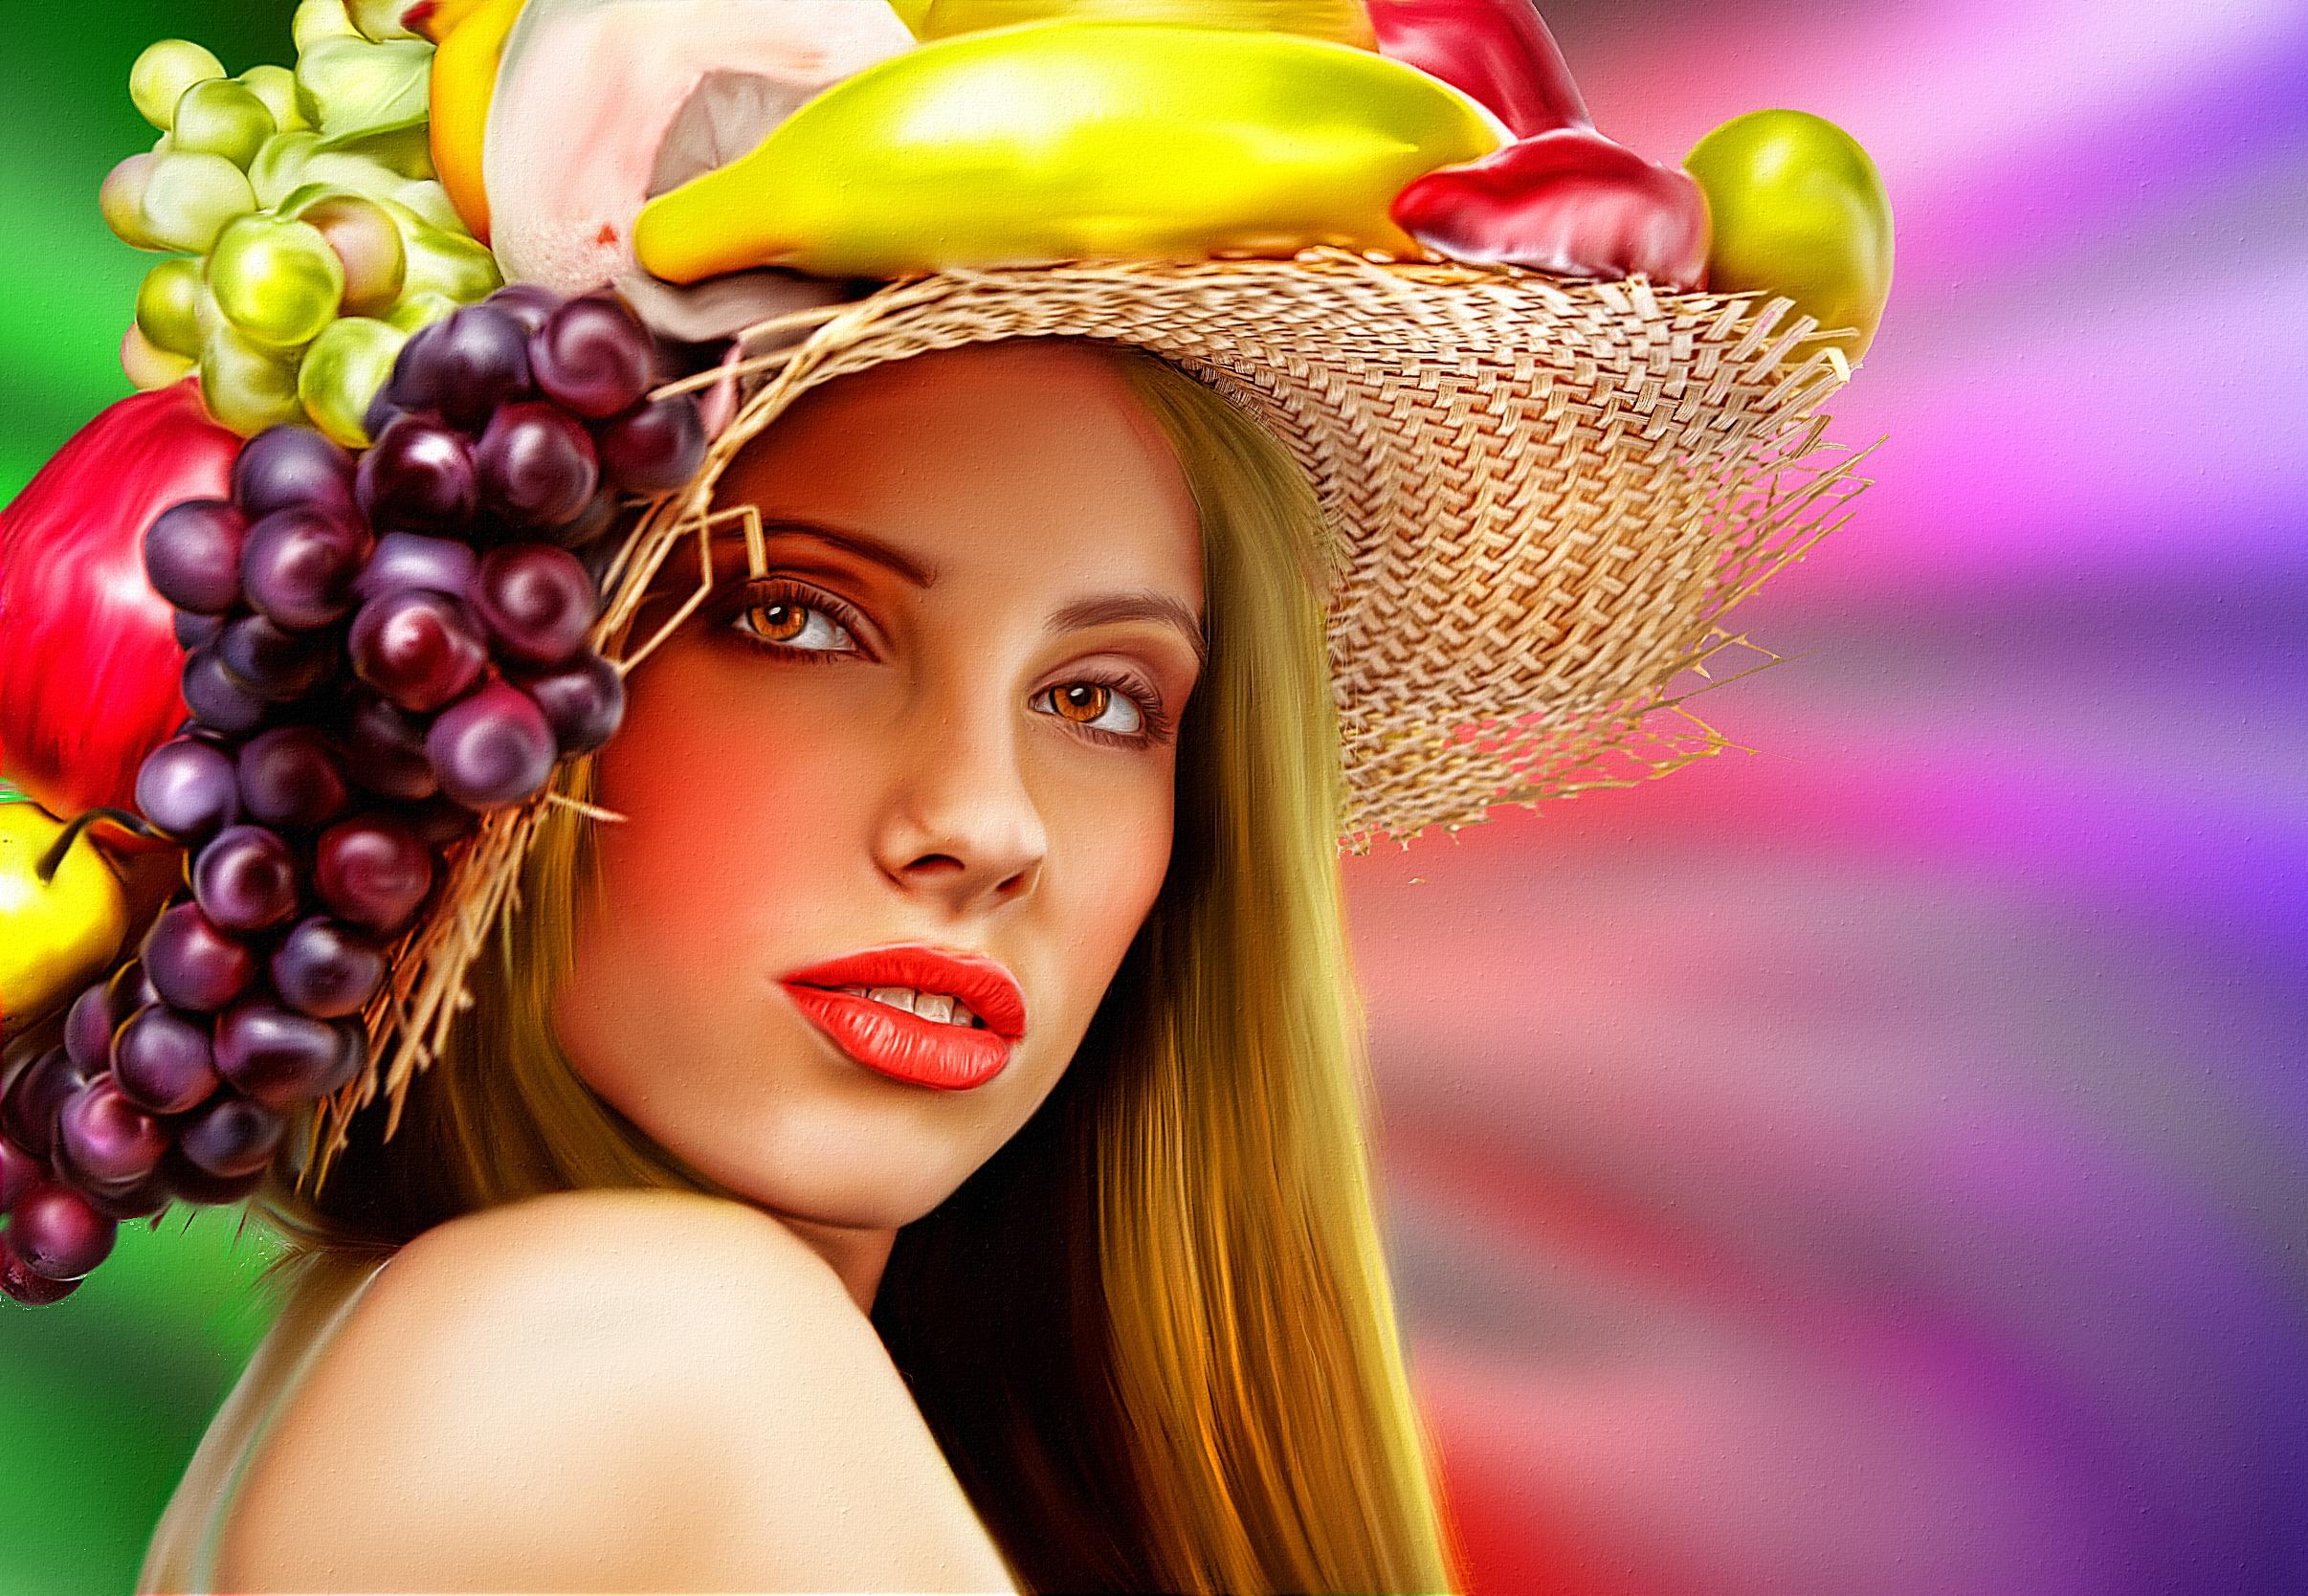 Фото бесплатно Девушка с цветами и фруктами, портрет, холст